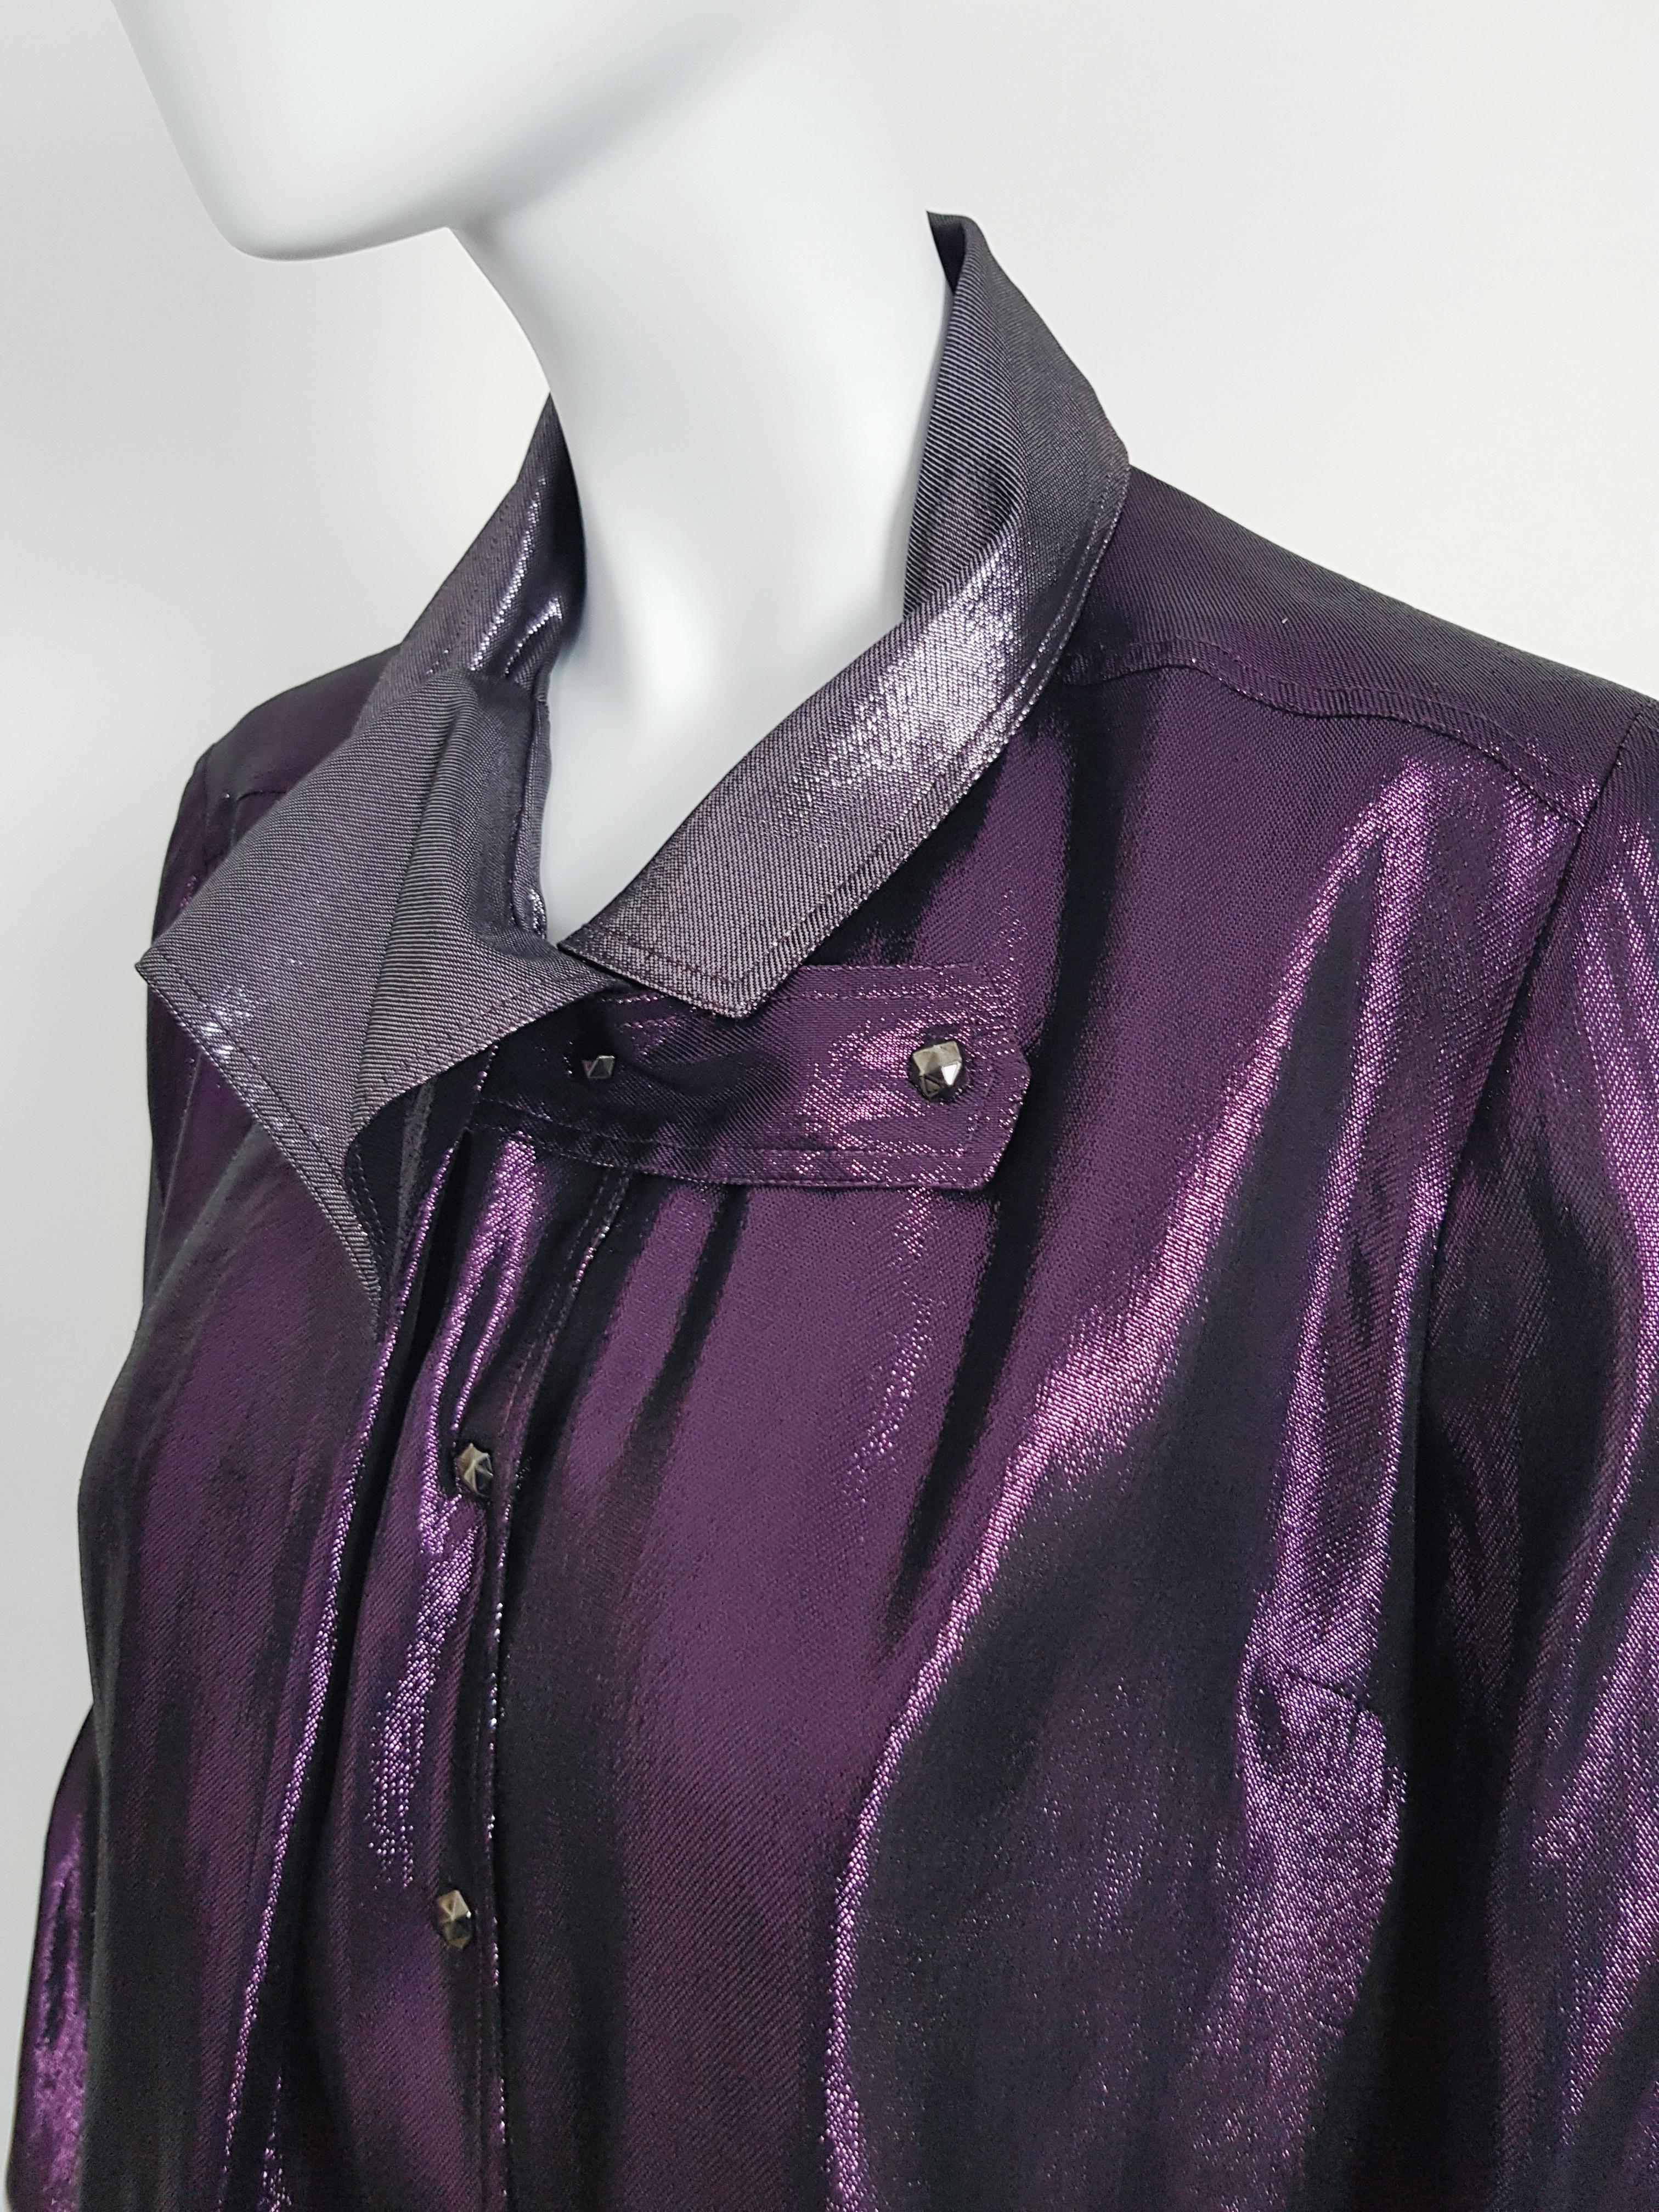 Fabuleuse chemise en soie métallisée de la collection RTW de Gucci automne 2009 conçue par Frida Giannini

- Tissu en tissu métallique double effet gris et violet
-Closé par des boutons de boutonnage métalliques
-Collier spécial
64% Soie / 36%